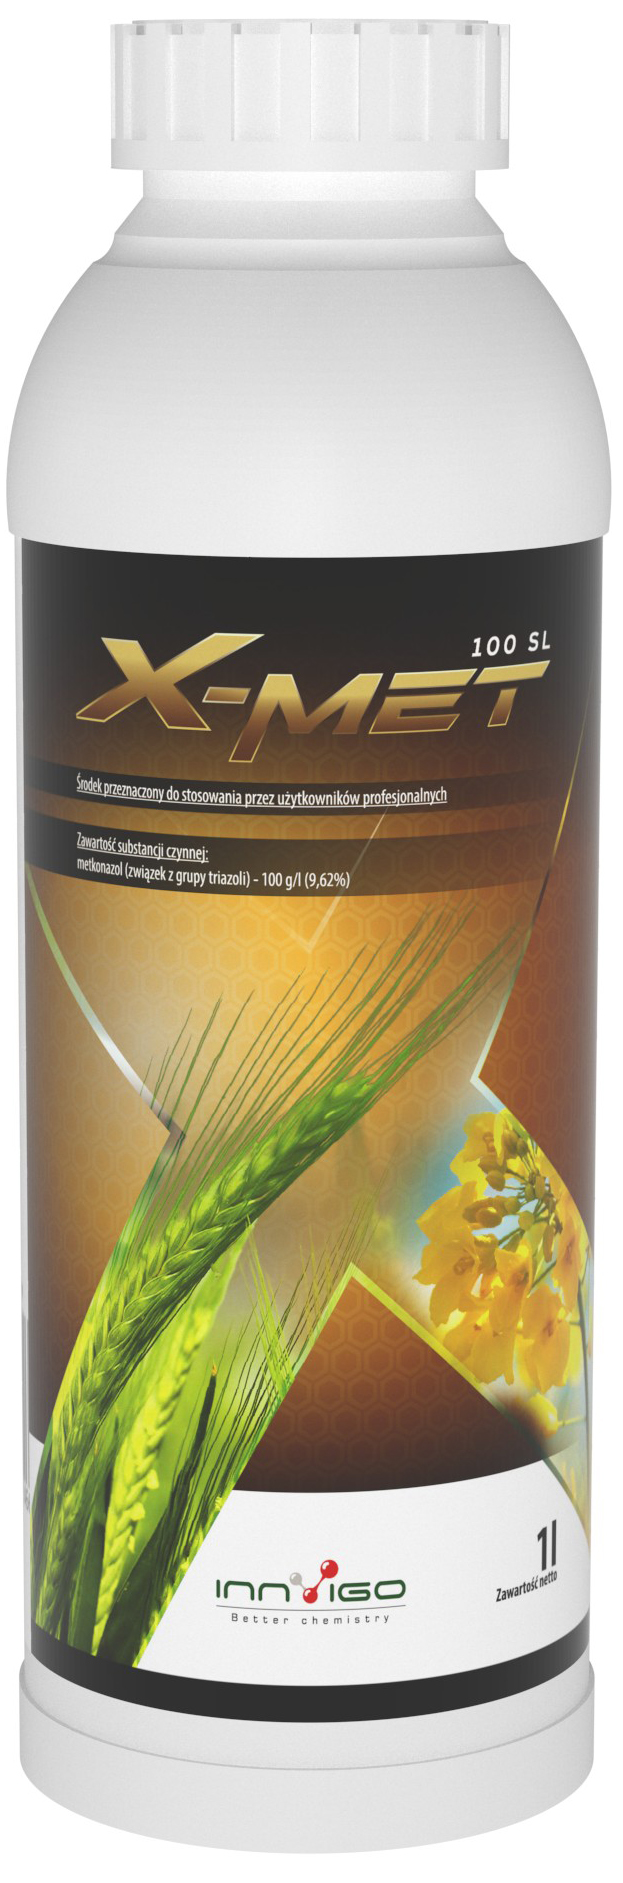 X-Met - Fungicydy na zboża ozime - ochrona pszenicy ozimej przed chorobami grzybowymi